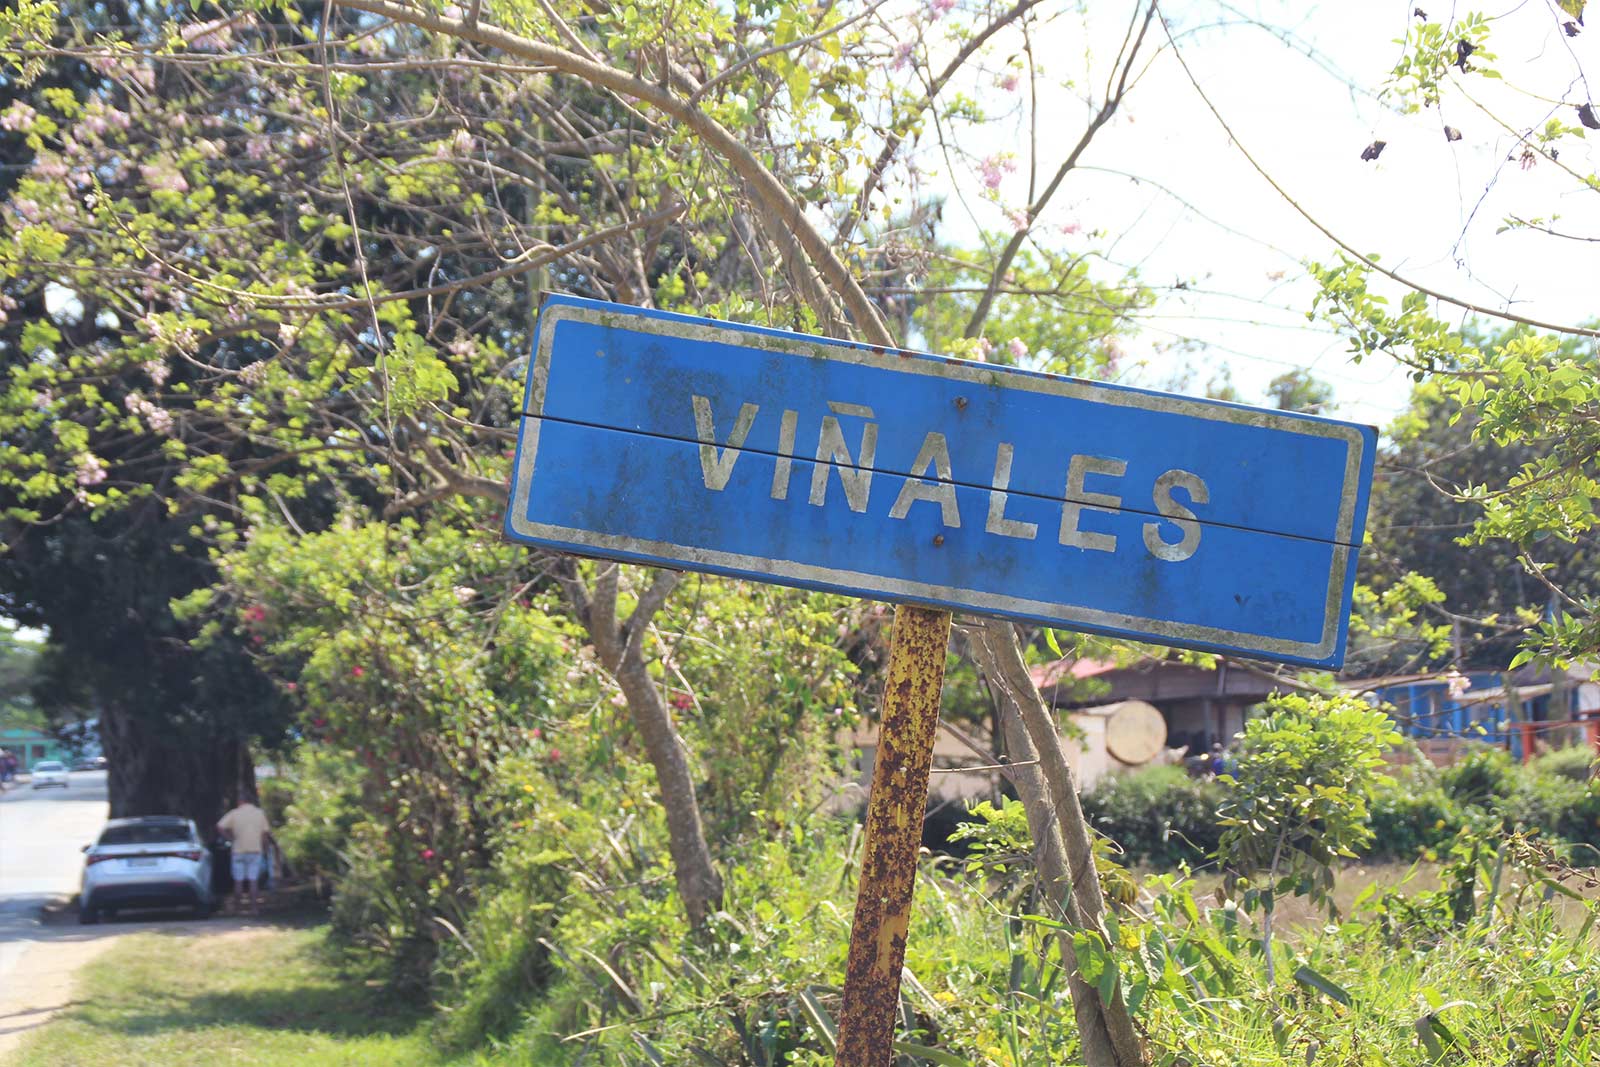 Cuba Vinales